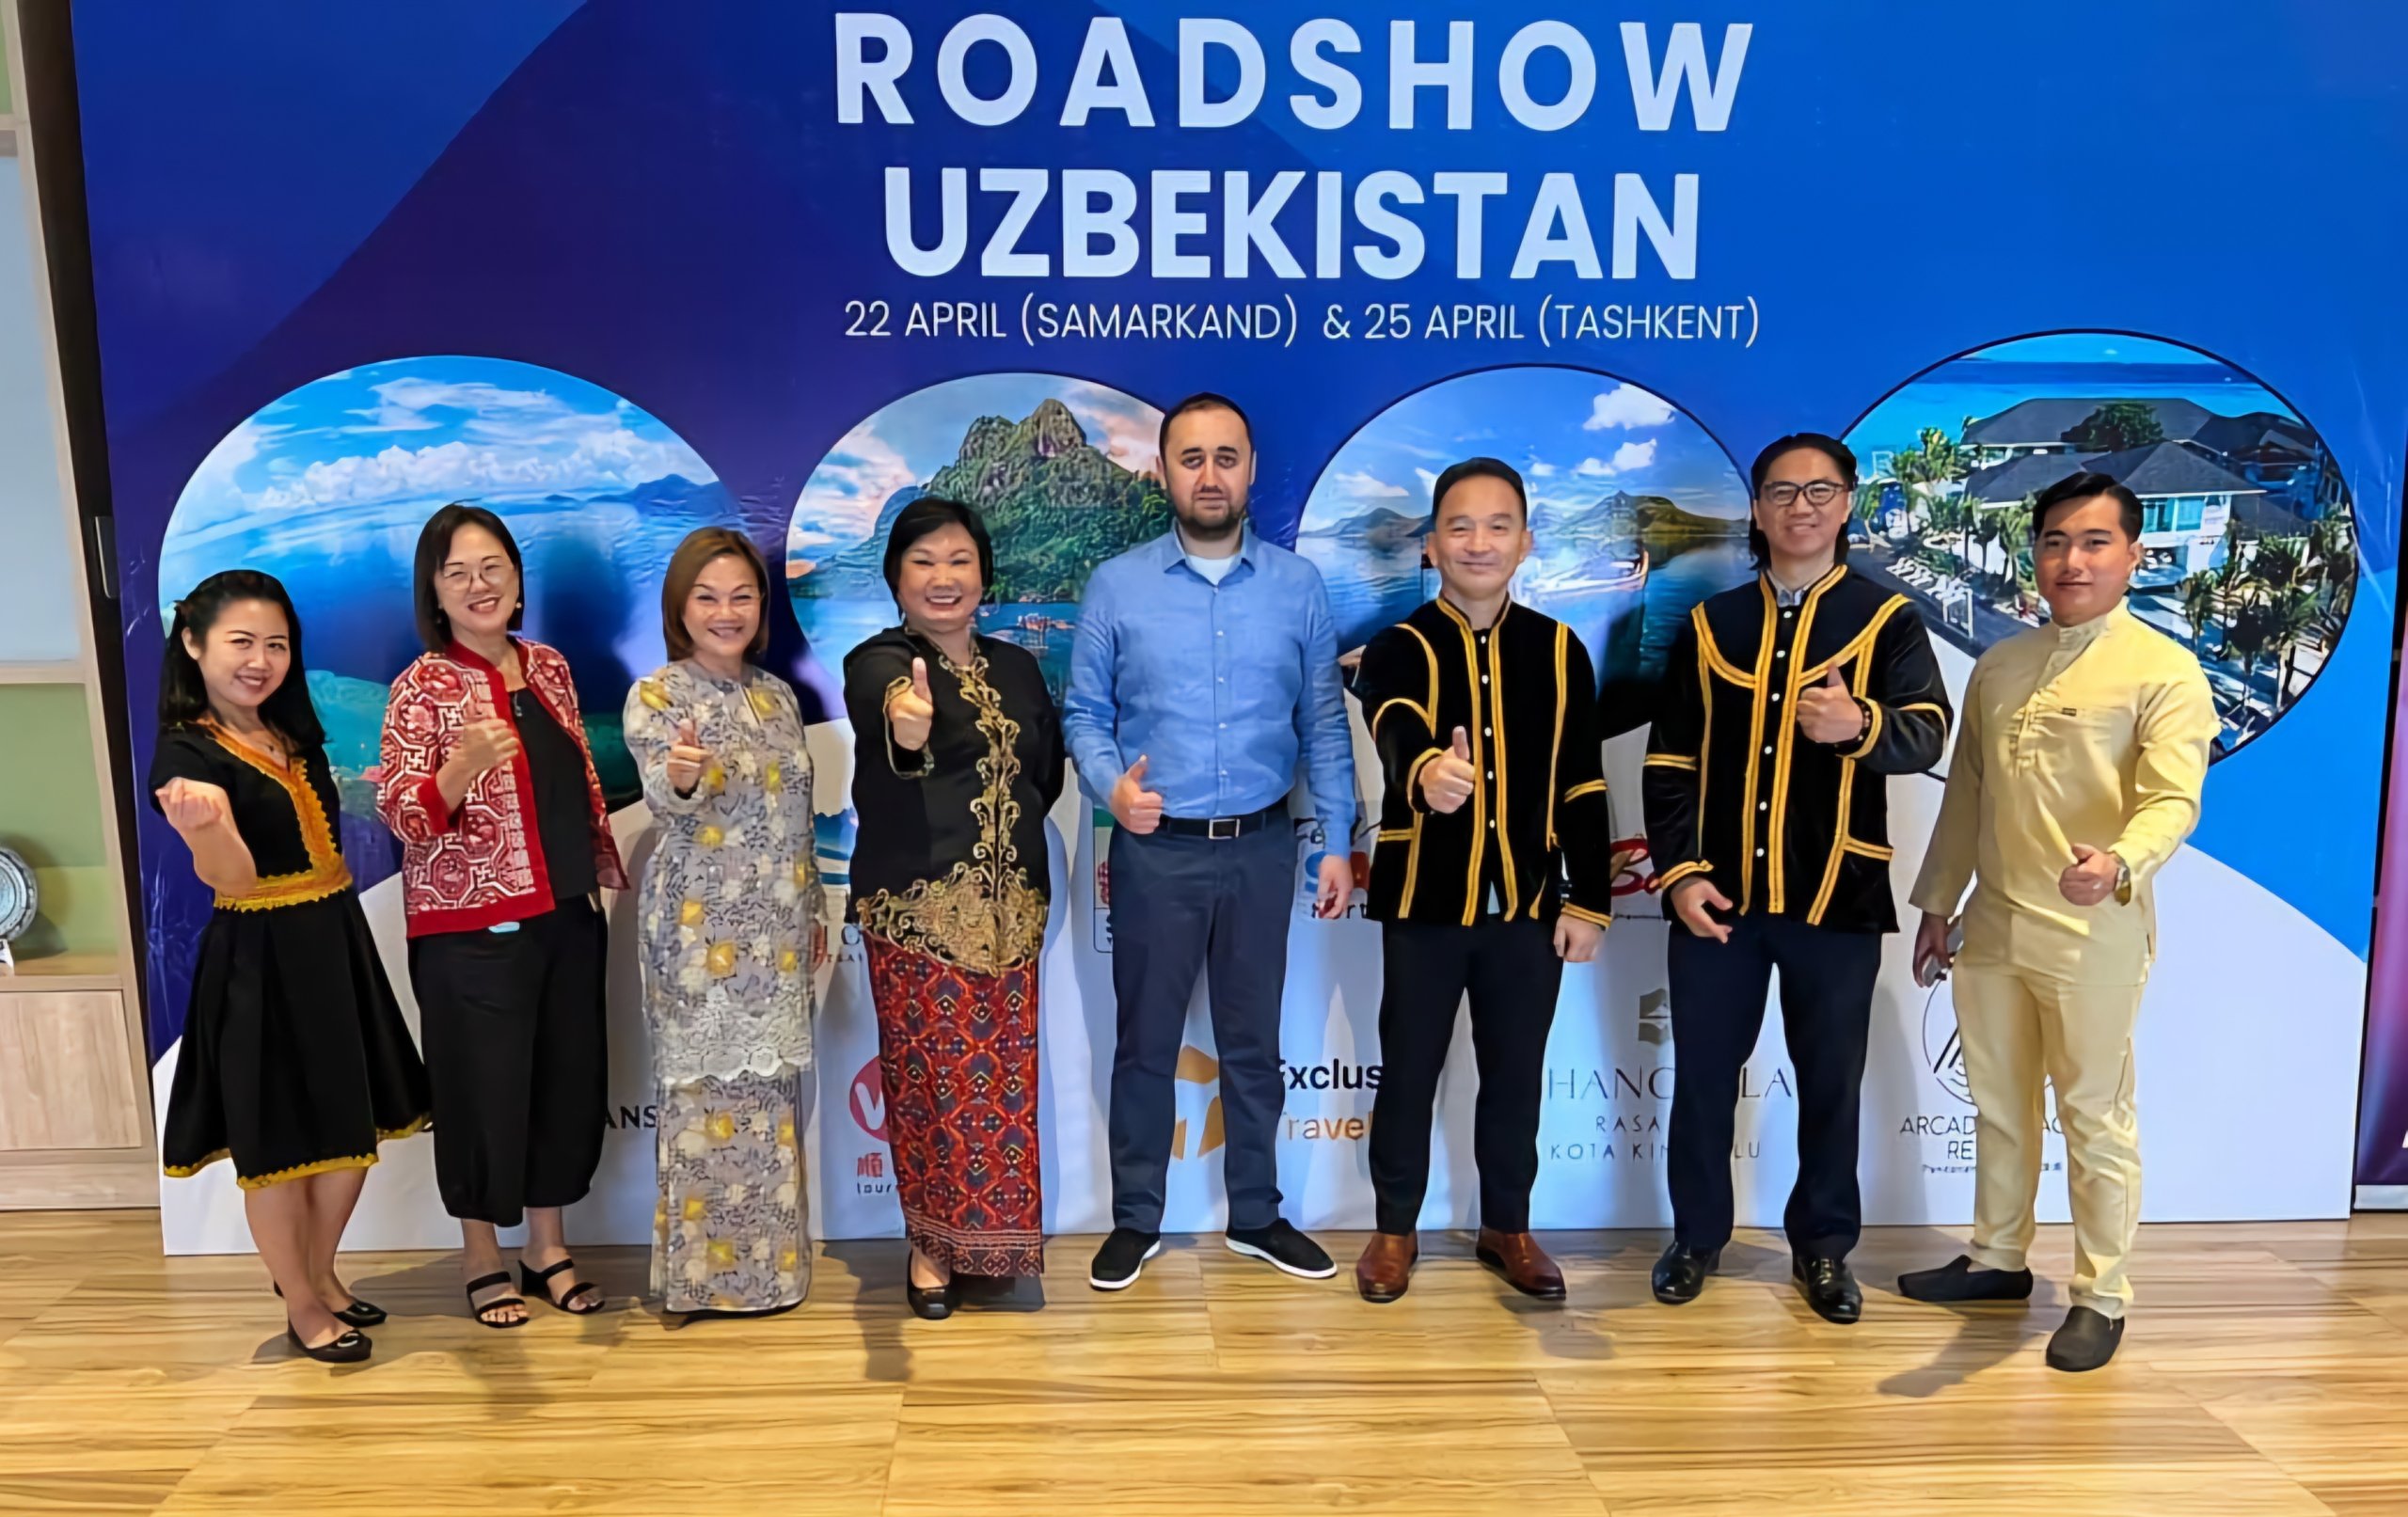 乌兹别克斯坦游客预计将前往亚庇、仙本那